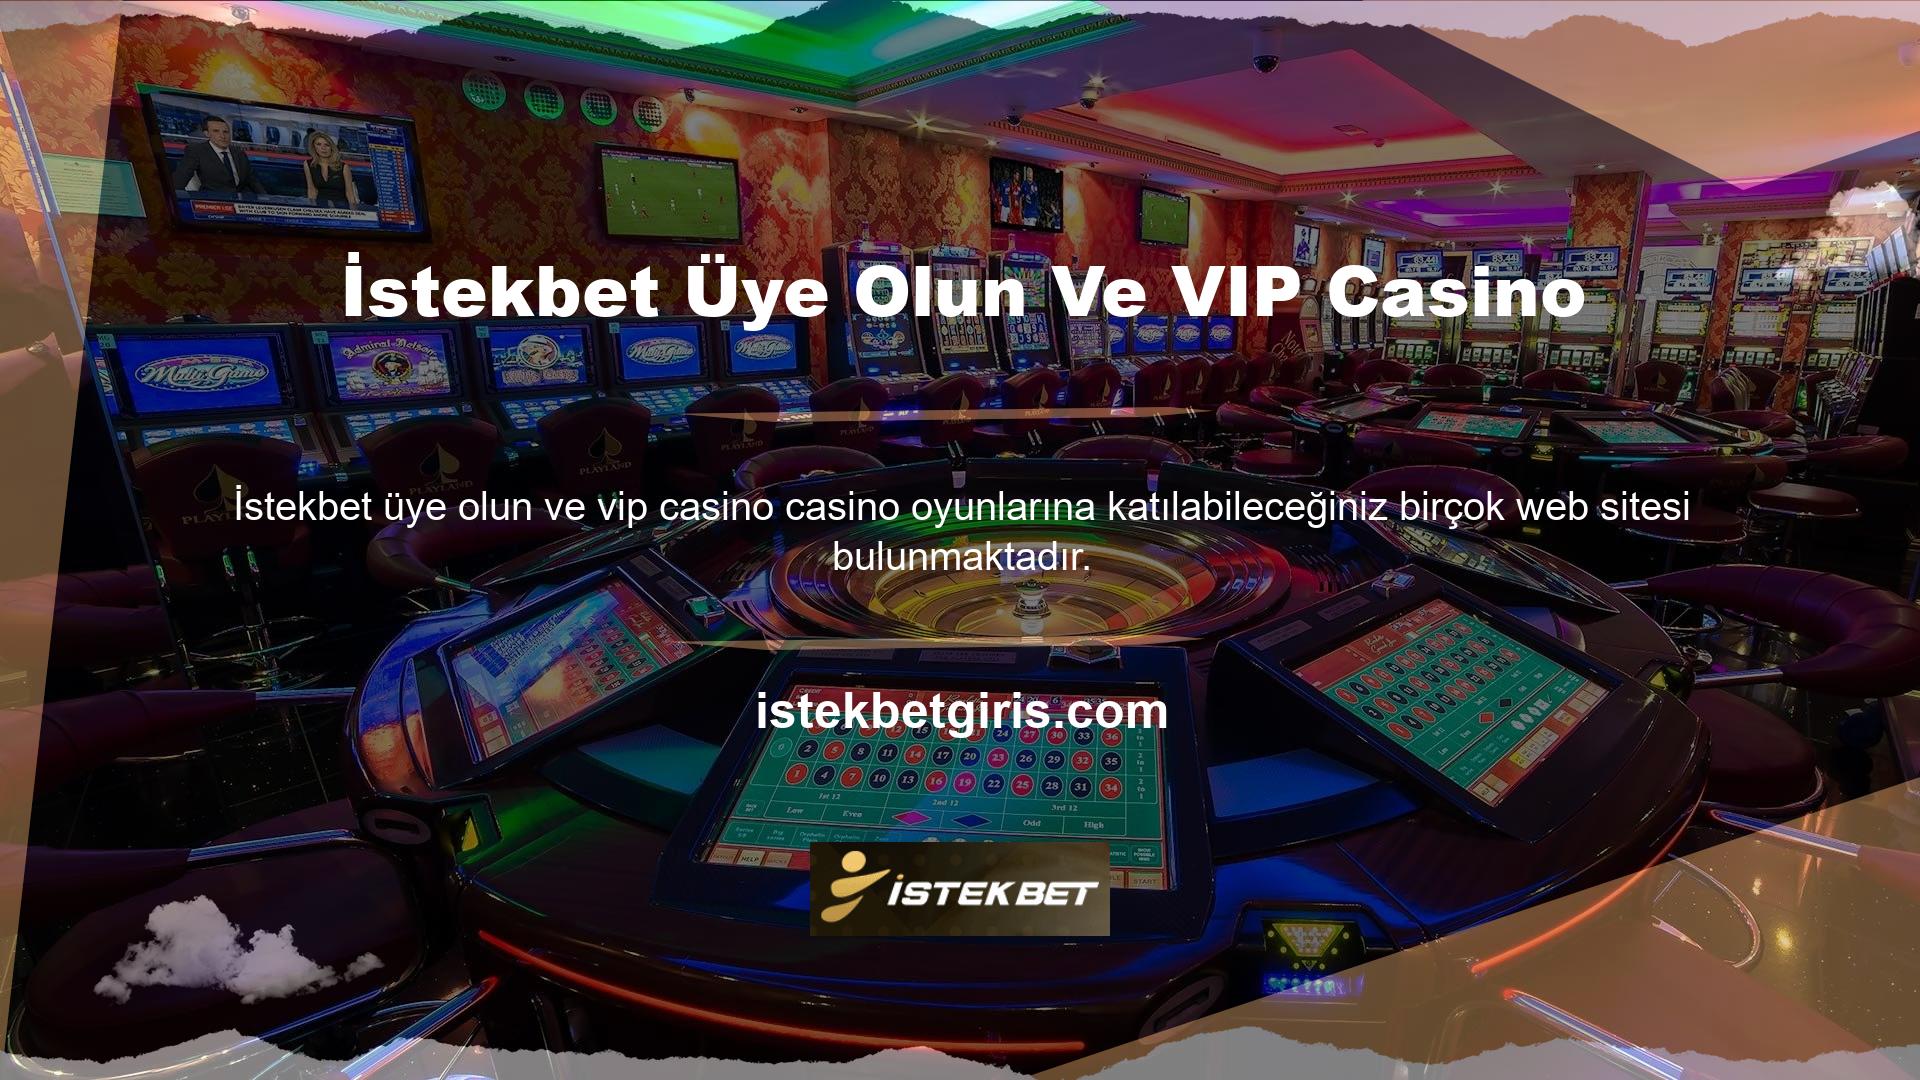 Ancak bunların Kıbrıs'taki gerçek casinolarla karıştırılmaması gerekir